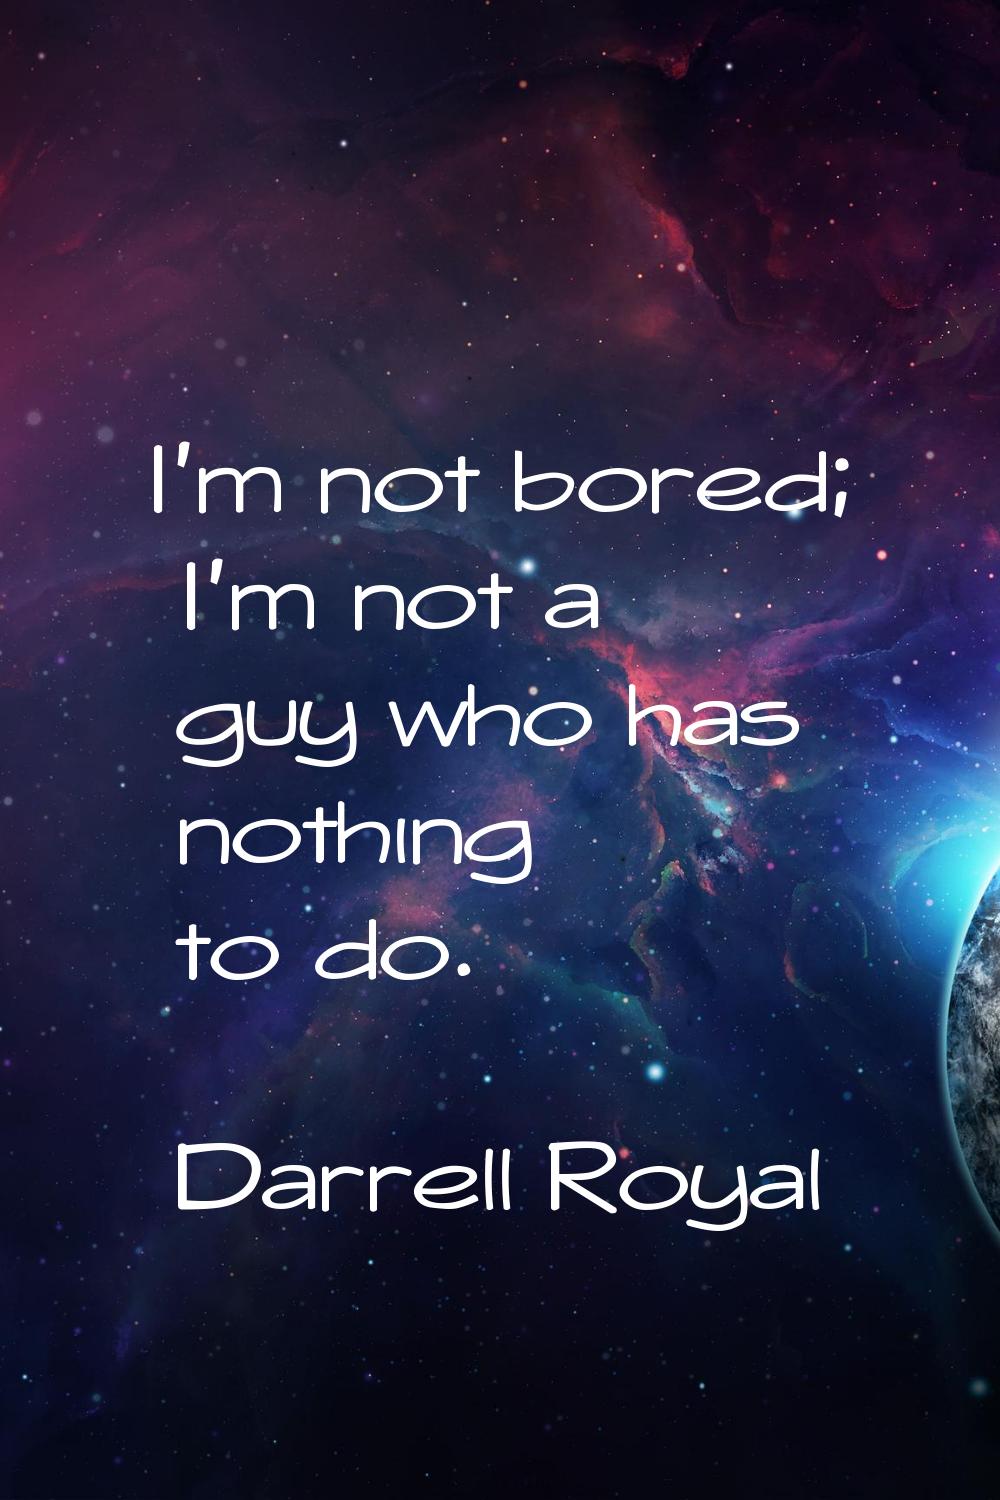 I'm not bored; I'm not a guy who has nothing to do.